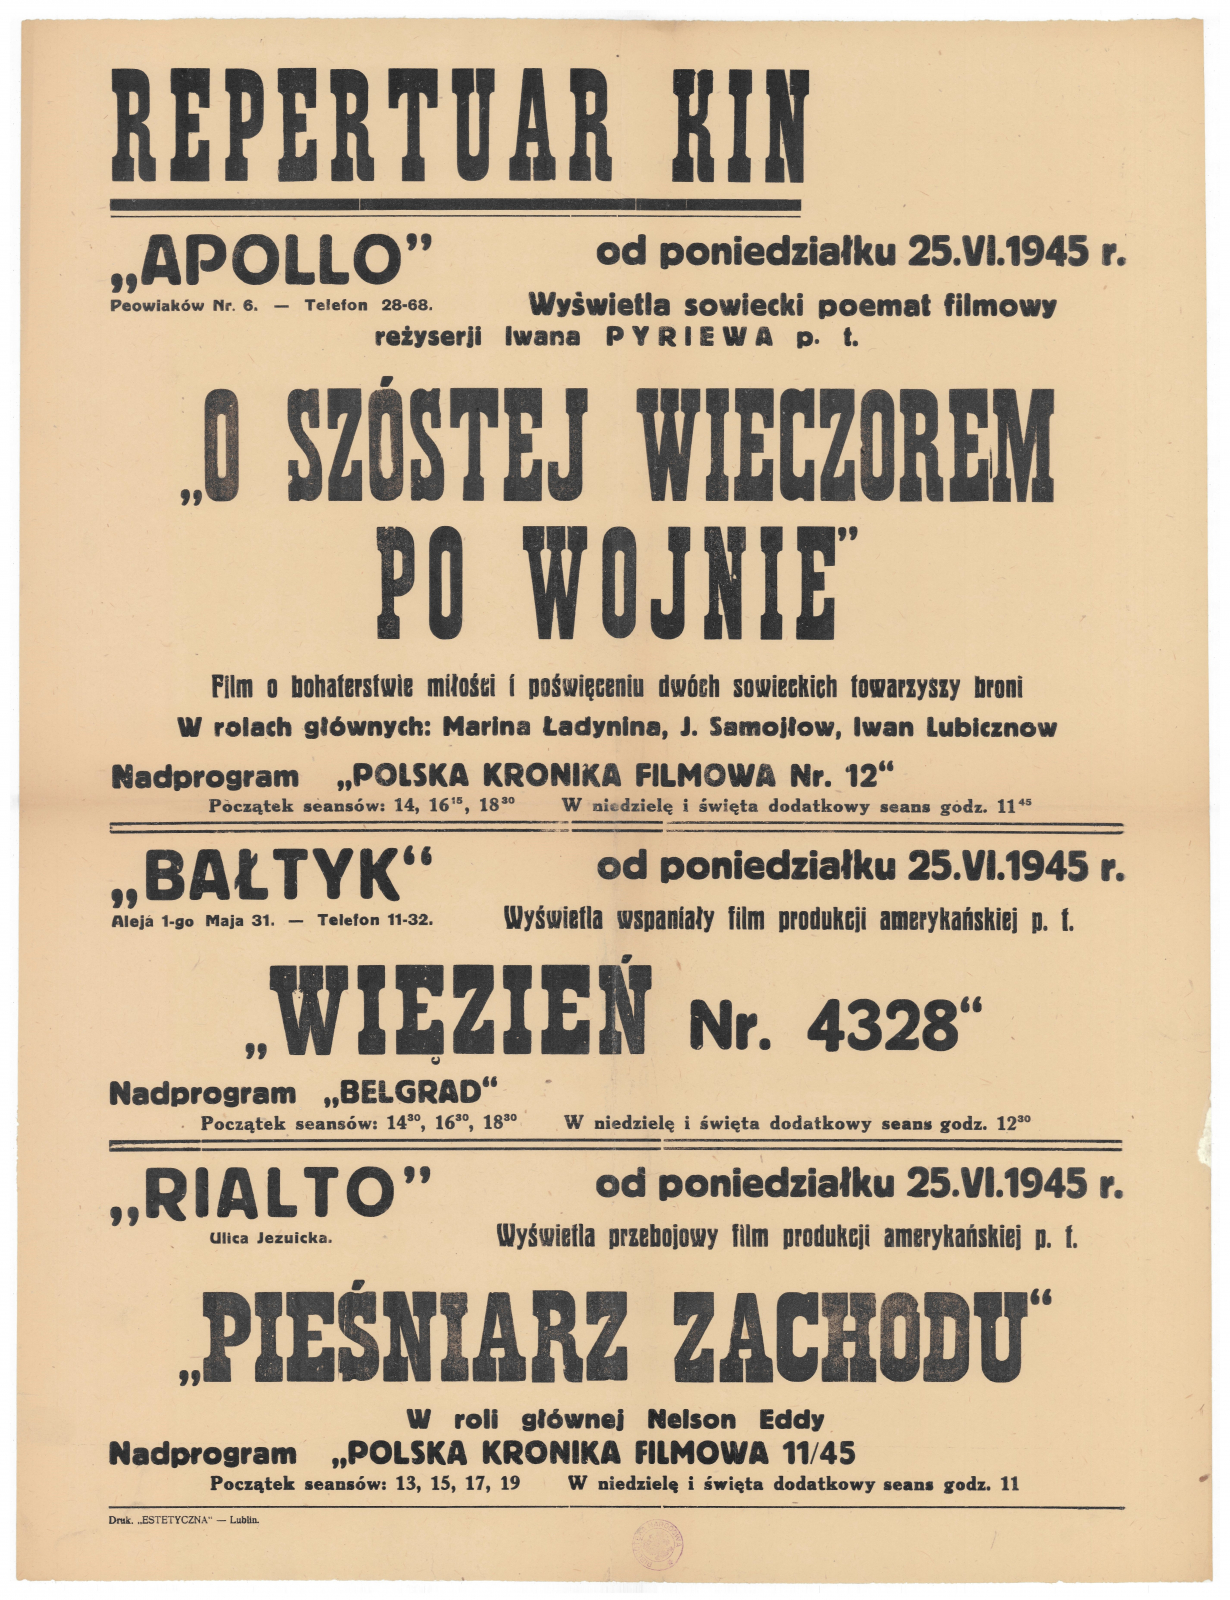 Афіша з репертуаром трьох кінотеатрів, які швидко відновили роботу після війни: «Аполло», «Bałtyk» і «Rialto»; в останньому показано «Співака Заходу», 1945, збірка Національної бібліотеки.